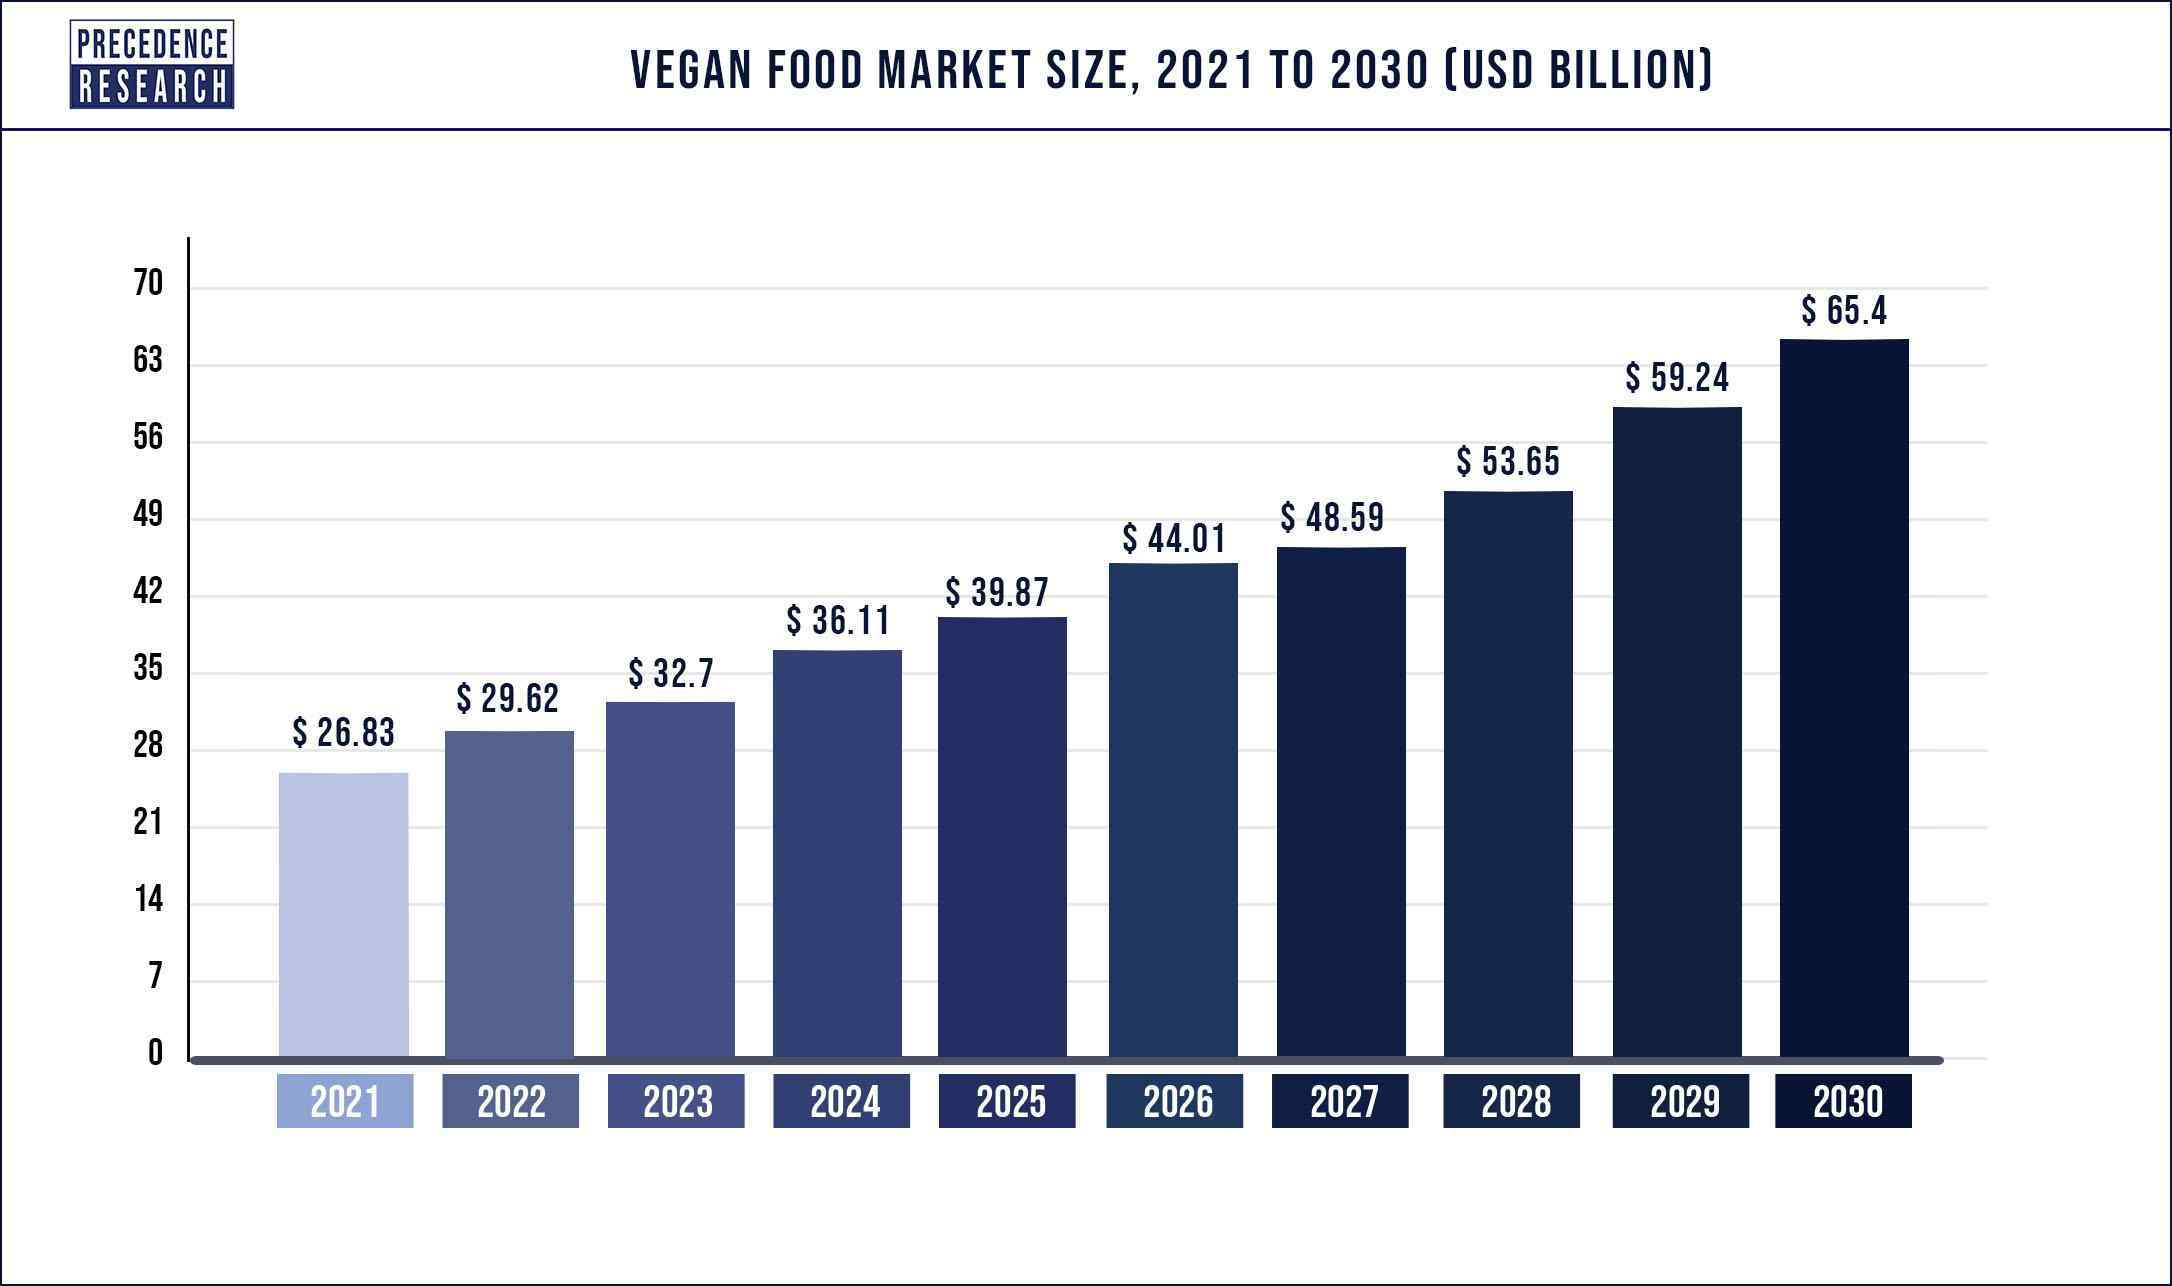 Vegan Food Market Size 2021 to 2030